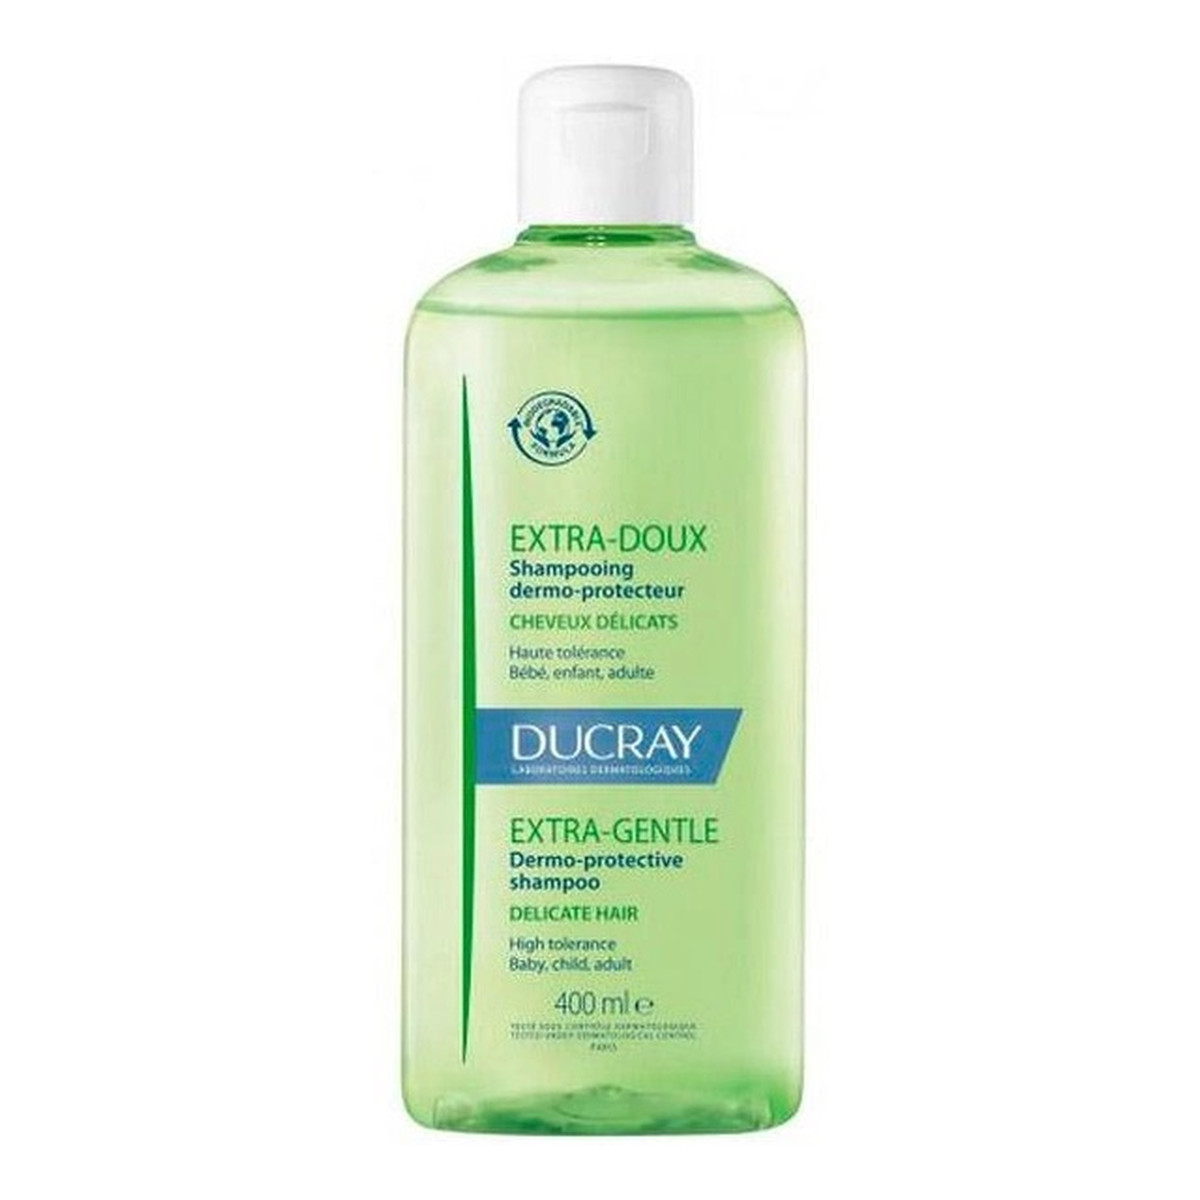 Ducray Extra-gentle dermo-protective shampoo delikatny szampon do włosów wrażliwych 400ml